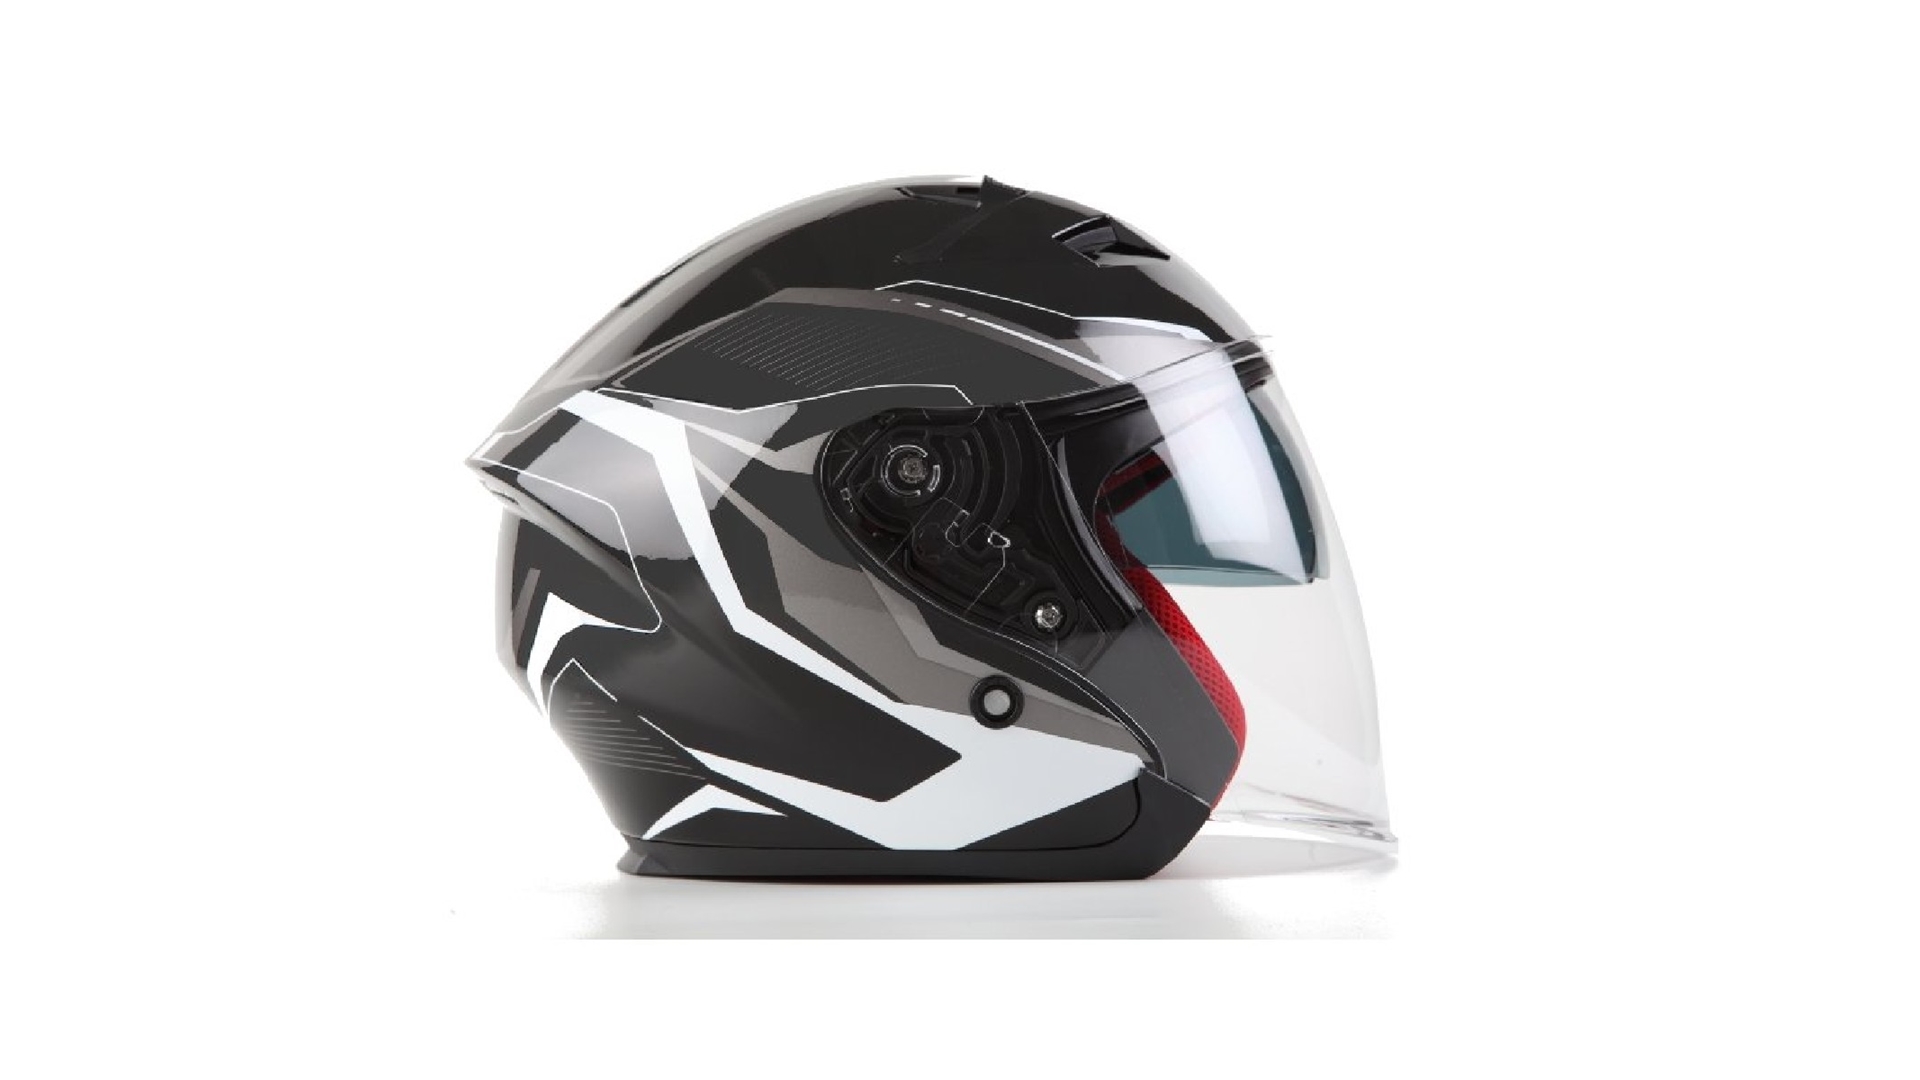 MAXX OF 868 extra velká skútrová helma otevřená s plexi a sluneční clonou, černo bílo stříbrná, 3XL černá/stříbrná 3XL